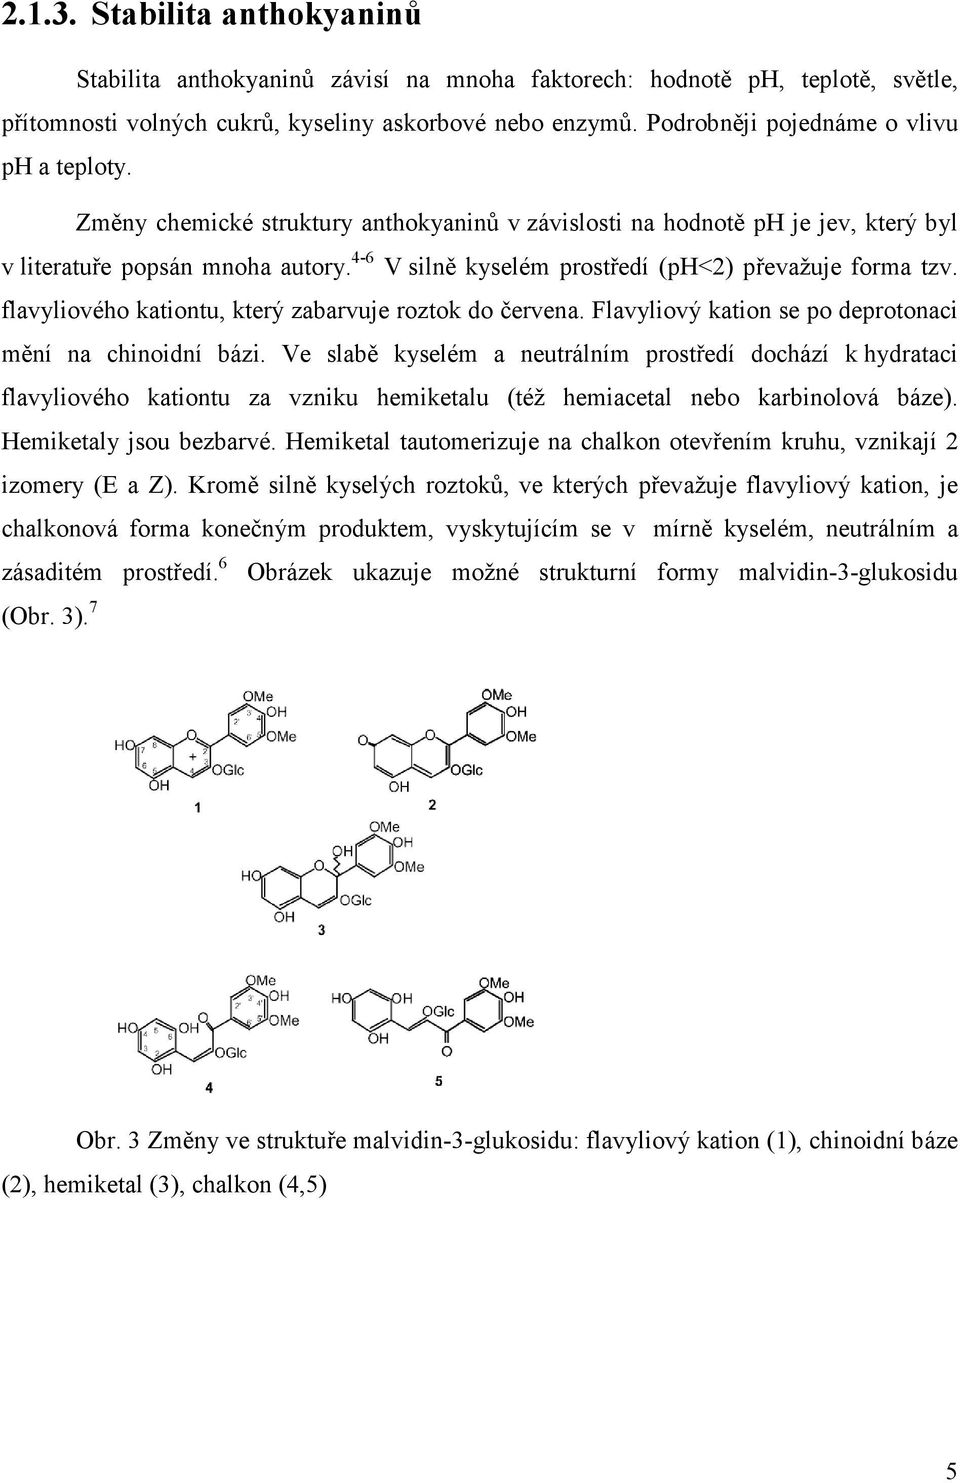 4-6 V silně kyselém prostředí (ph<2) převažuje forma tzv. flavyliového kationtu, který zabarvuje roztok do červena. Flavyliový kation se po deprotonaci mění na chinoidní bázi.